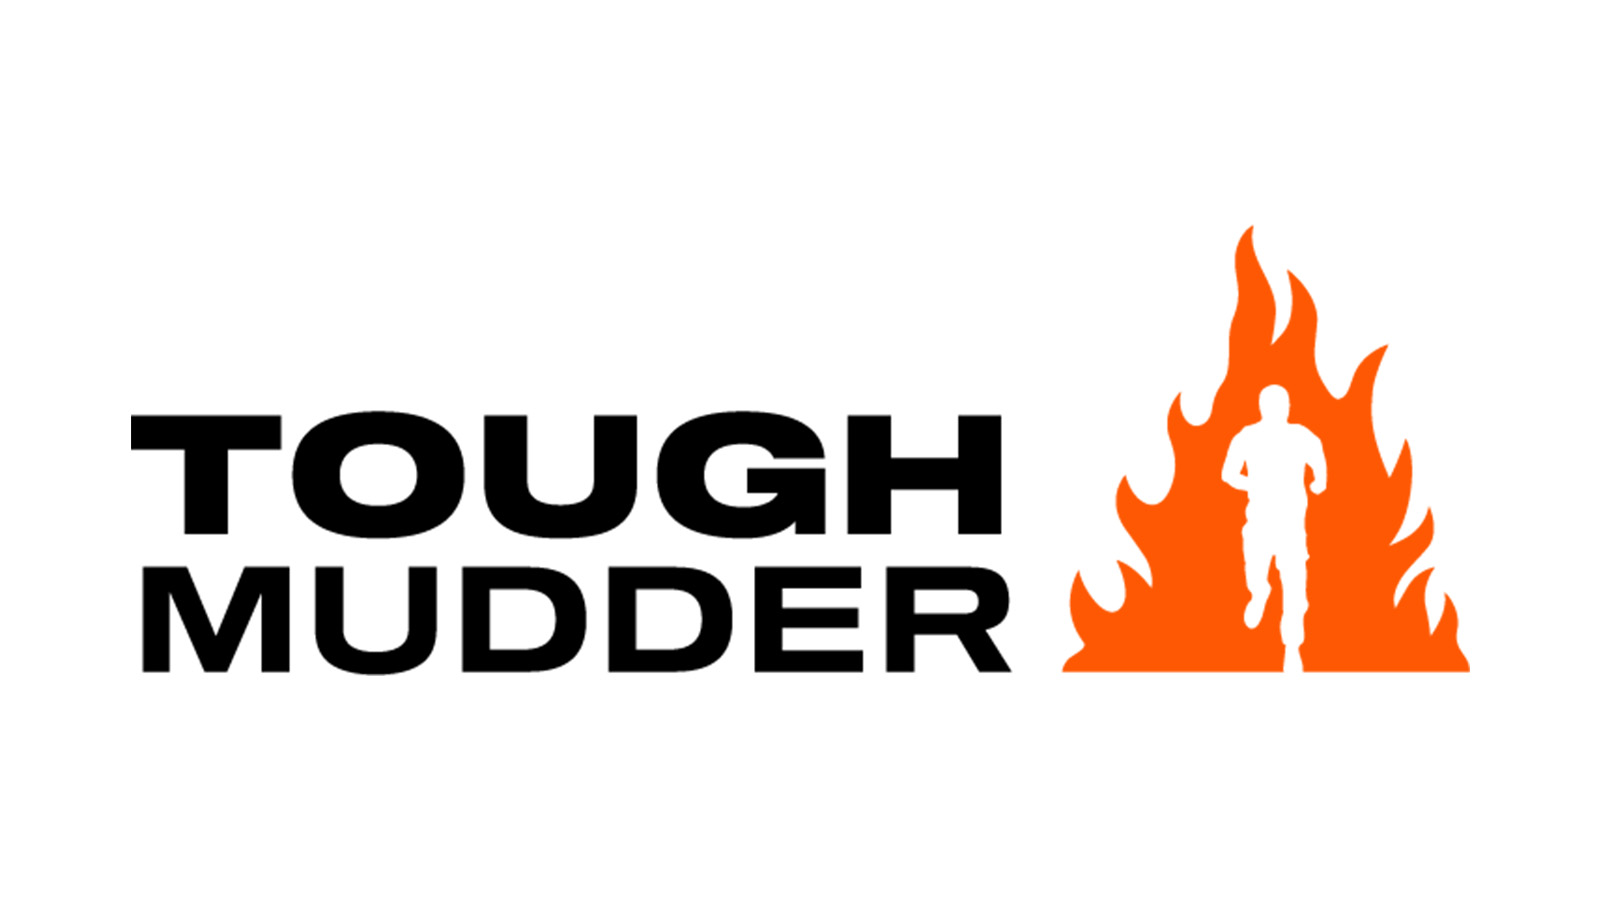 Tough Mudder logo